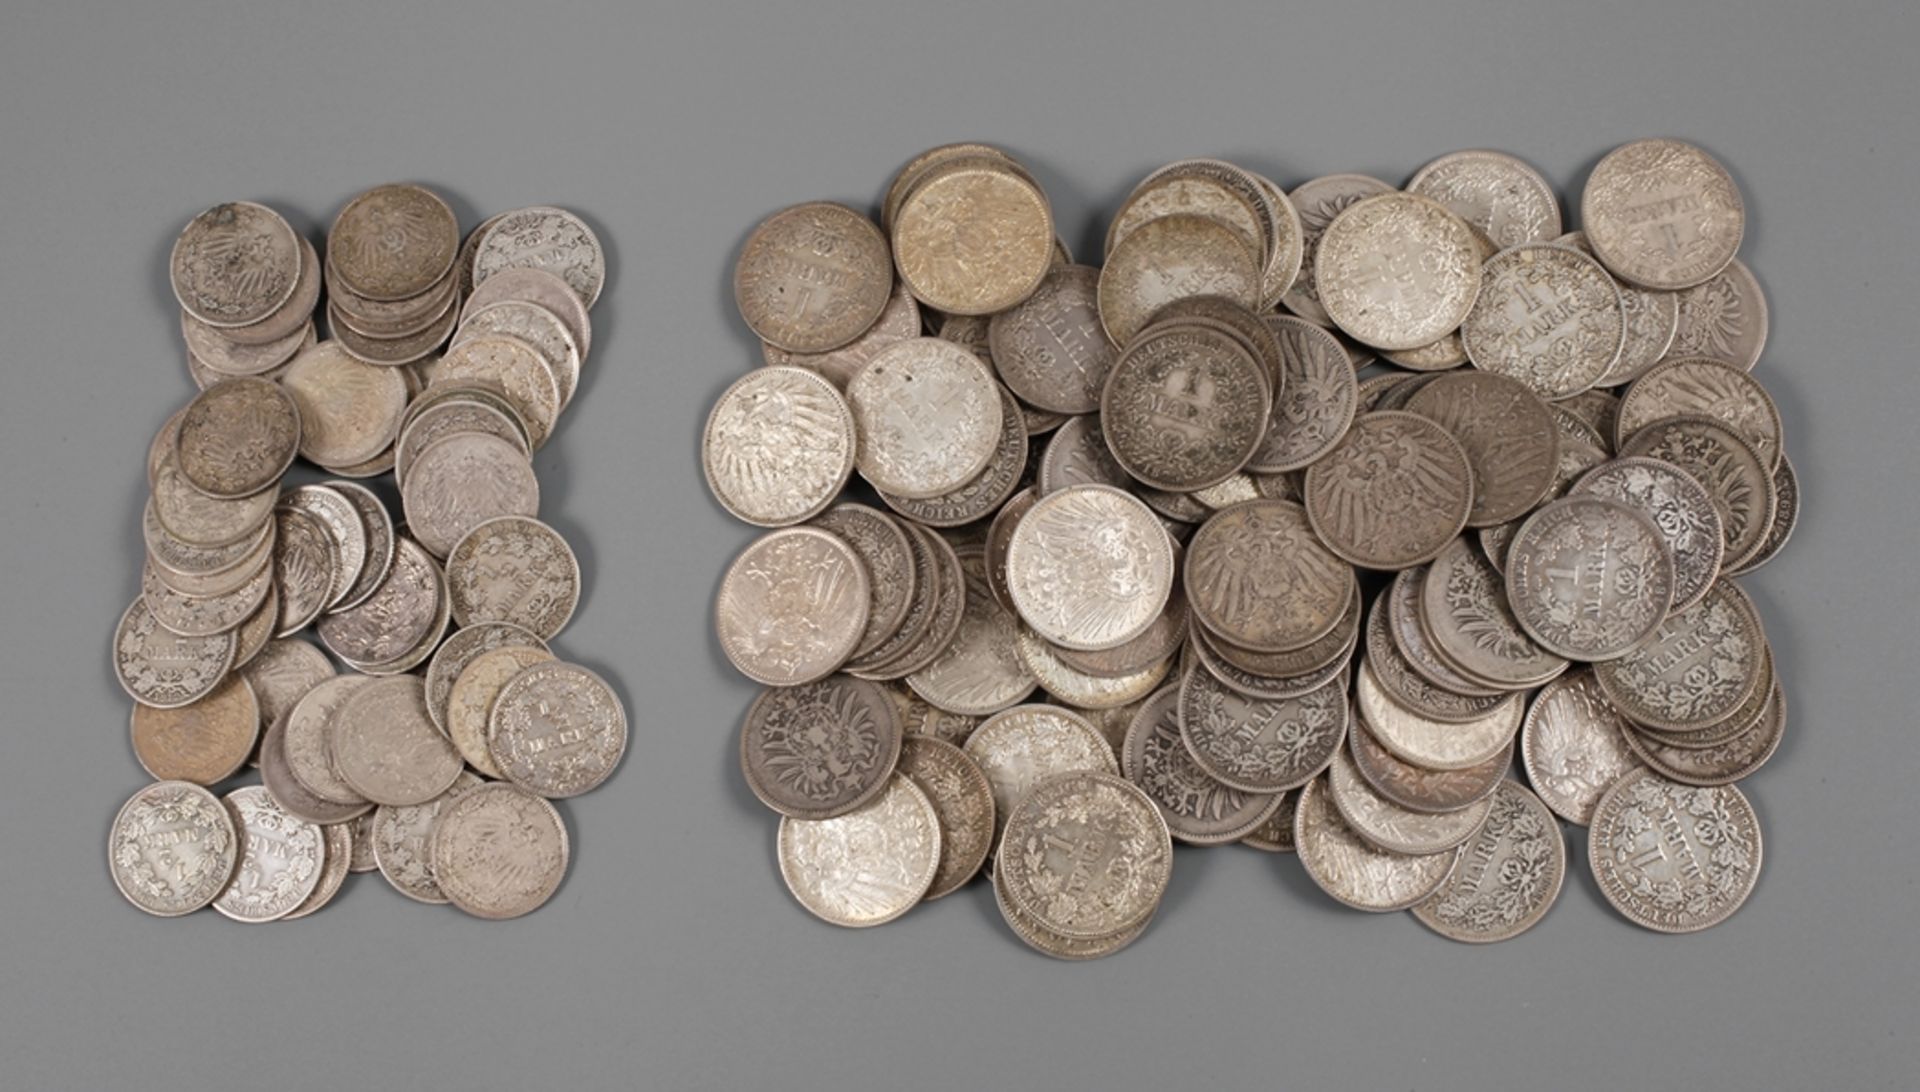 Konvolut Münzen Kaiserreichca. 100 Stück 1 Mark und ca. 50 Stück 1/2 Mark, unterschiedliche